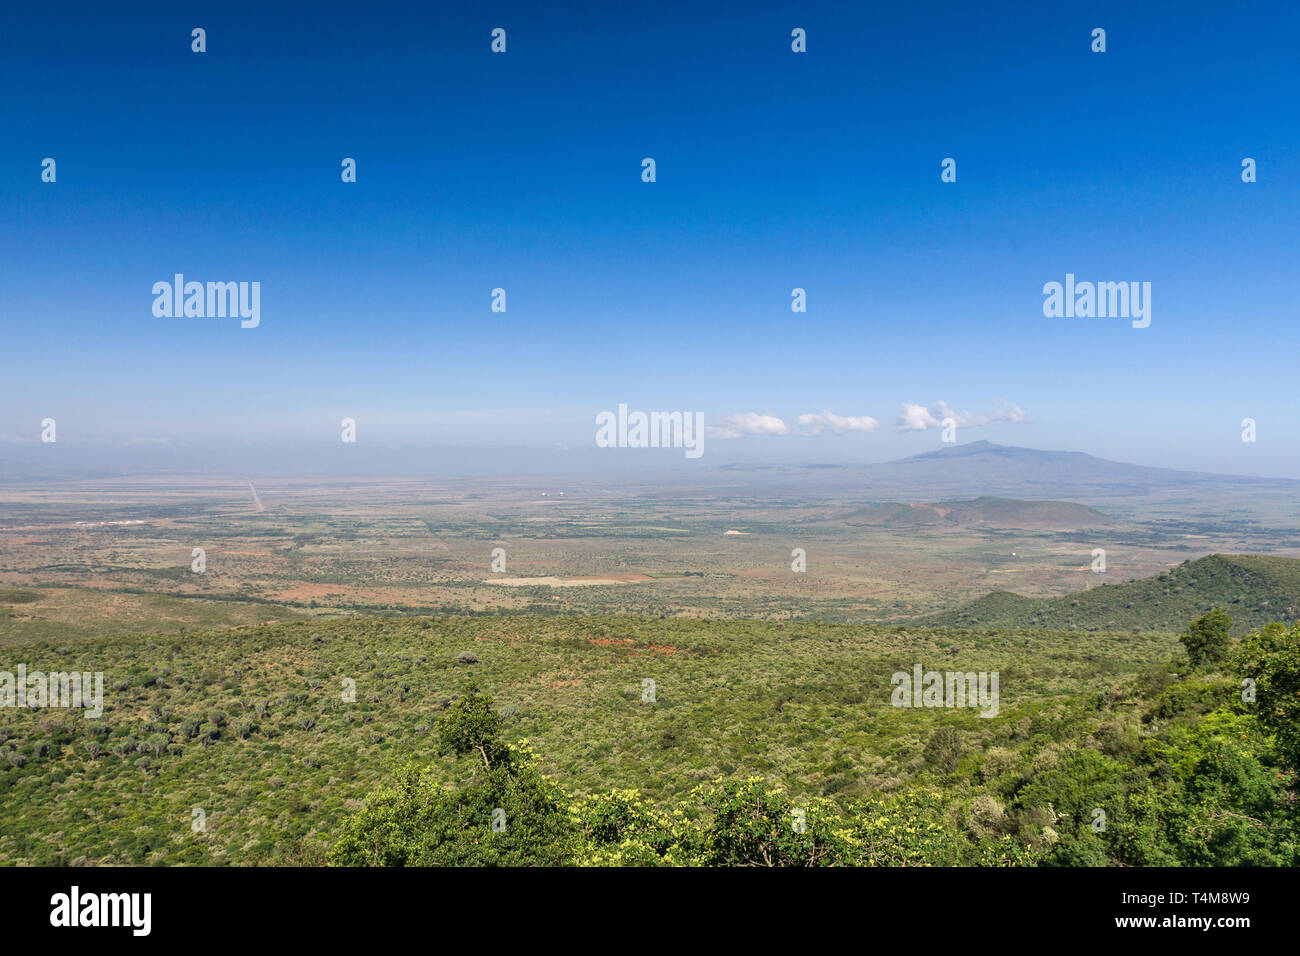 Vista del Valle del Rift de teh acantilado con Monte Longonot en la distancia, Kenya Foto de stock